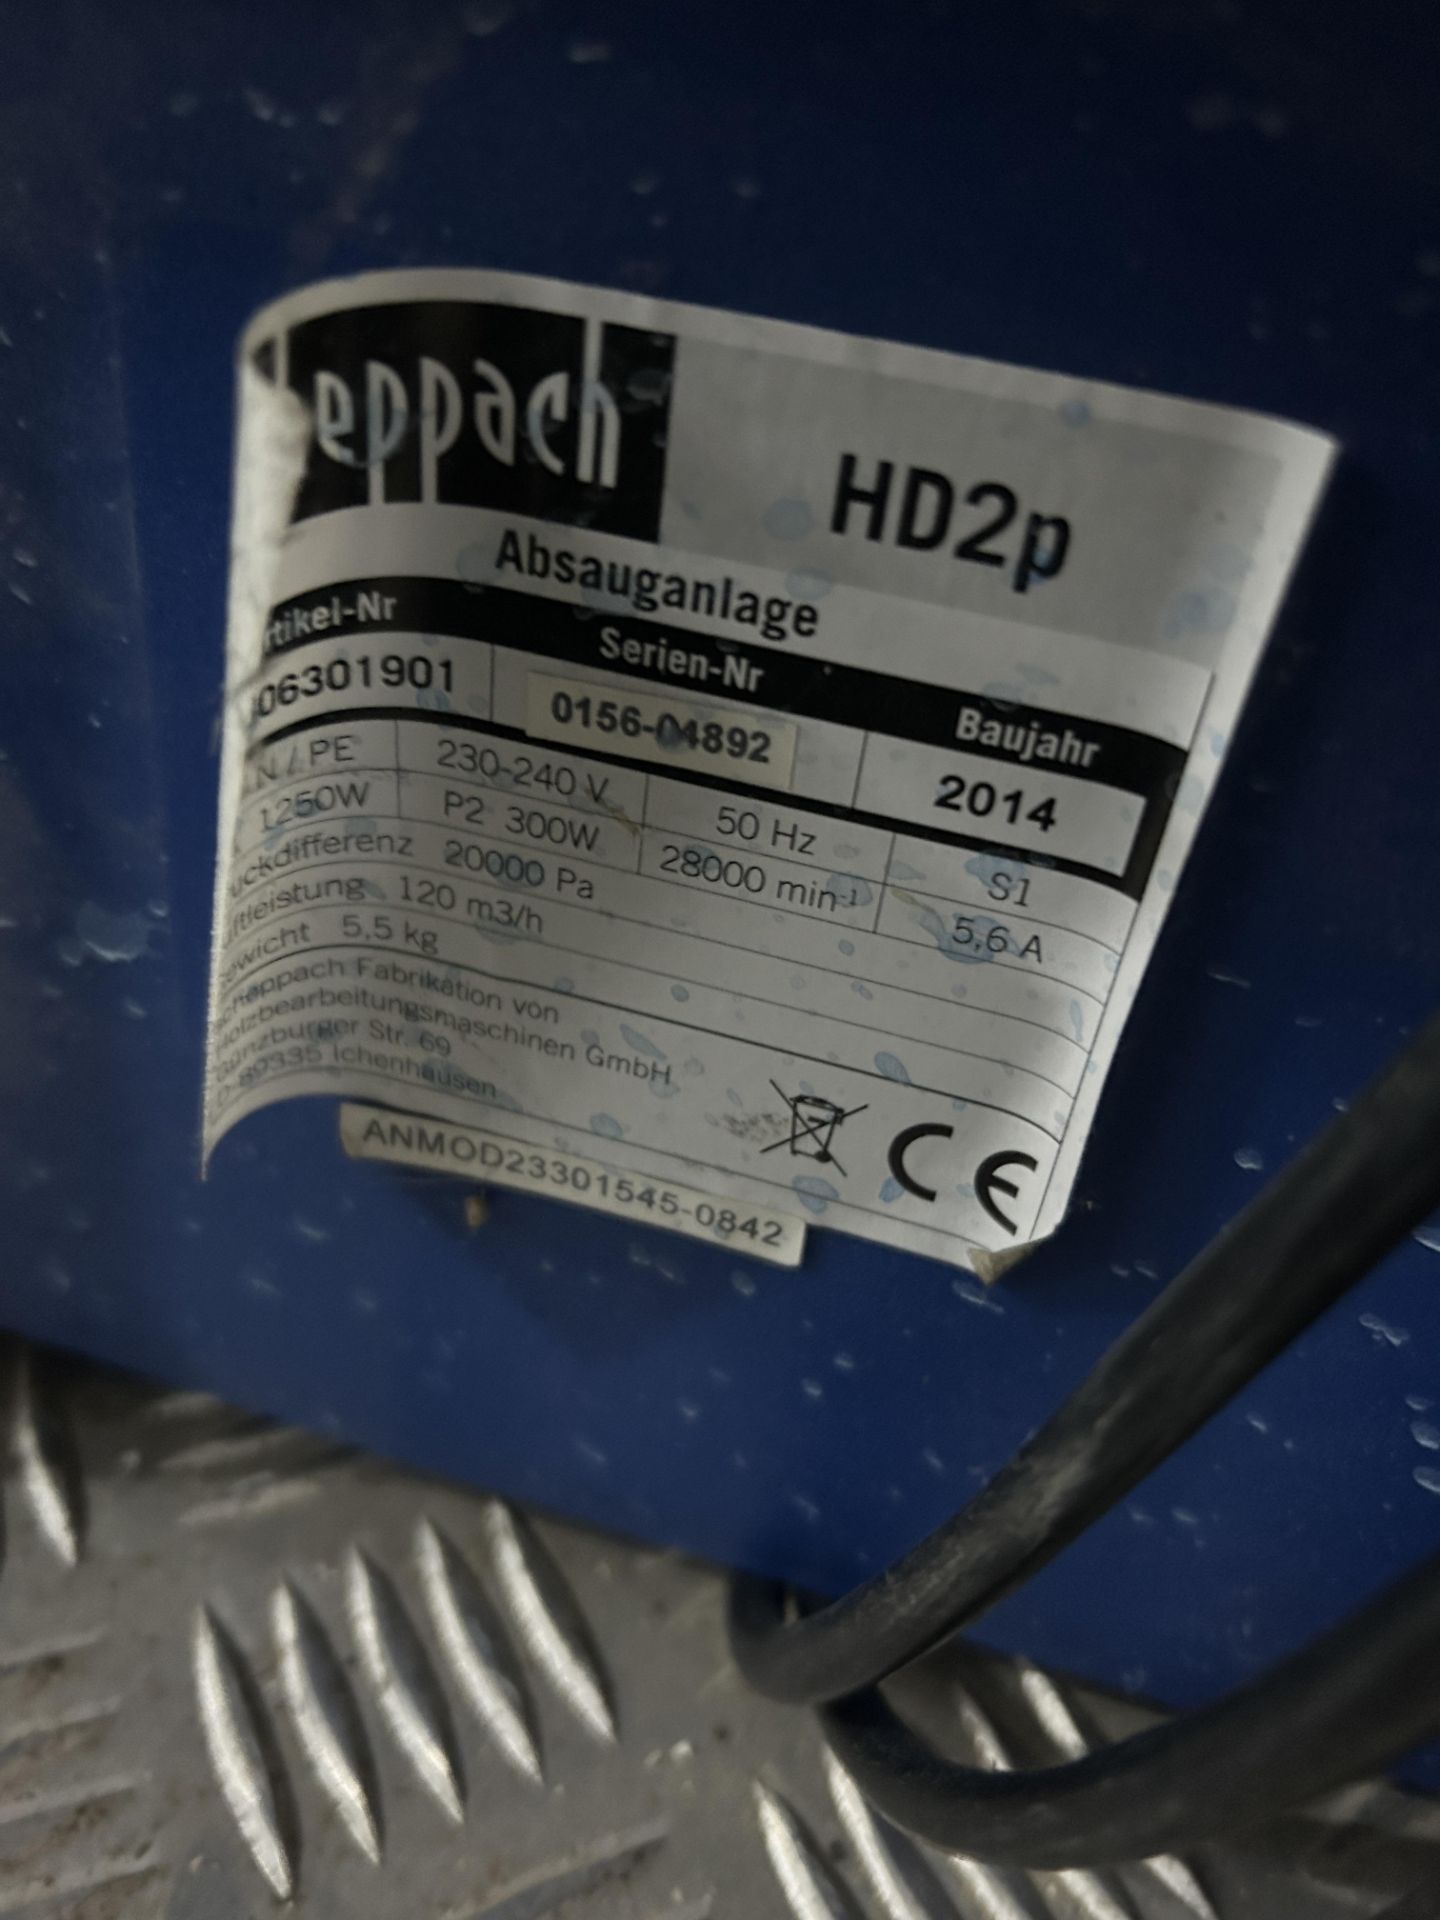 Scheppach HD2P dust collector - Image 4 of 4